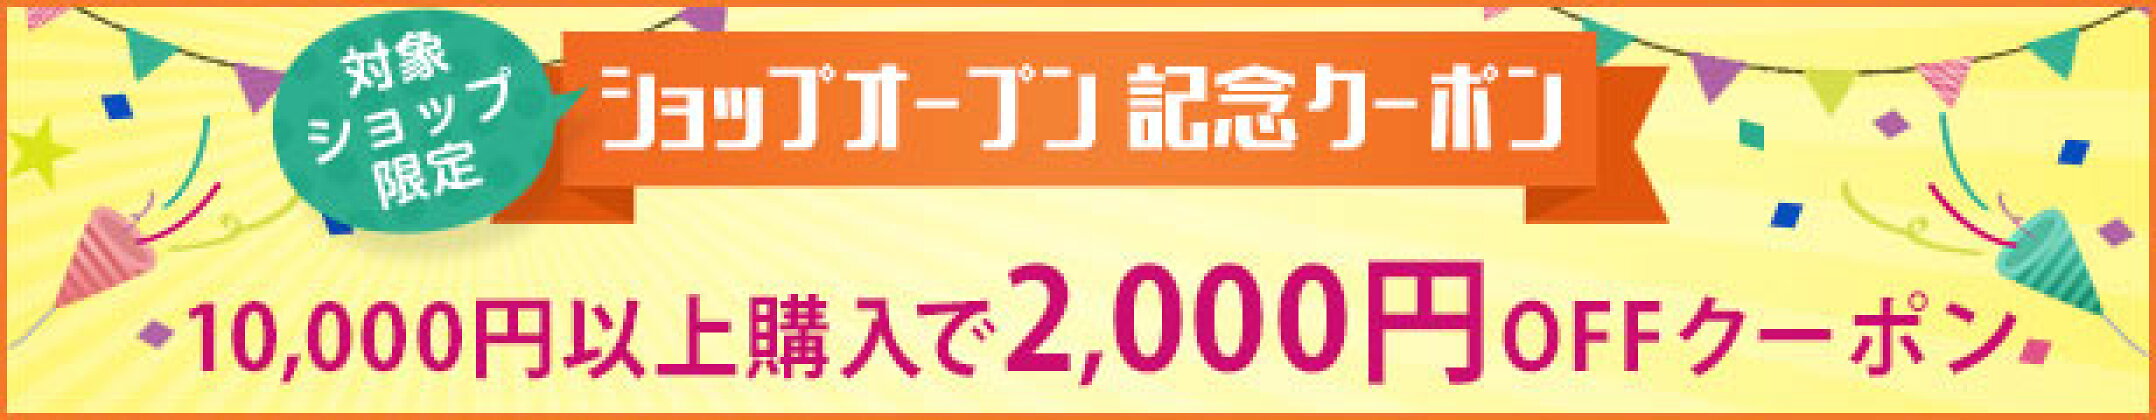 2,000円オフ